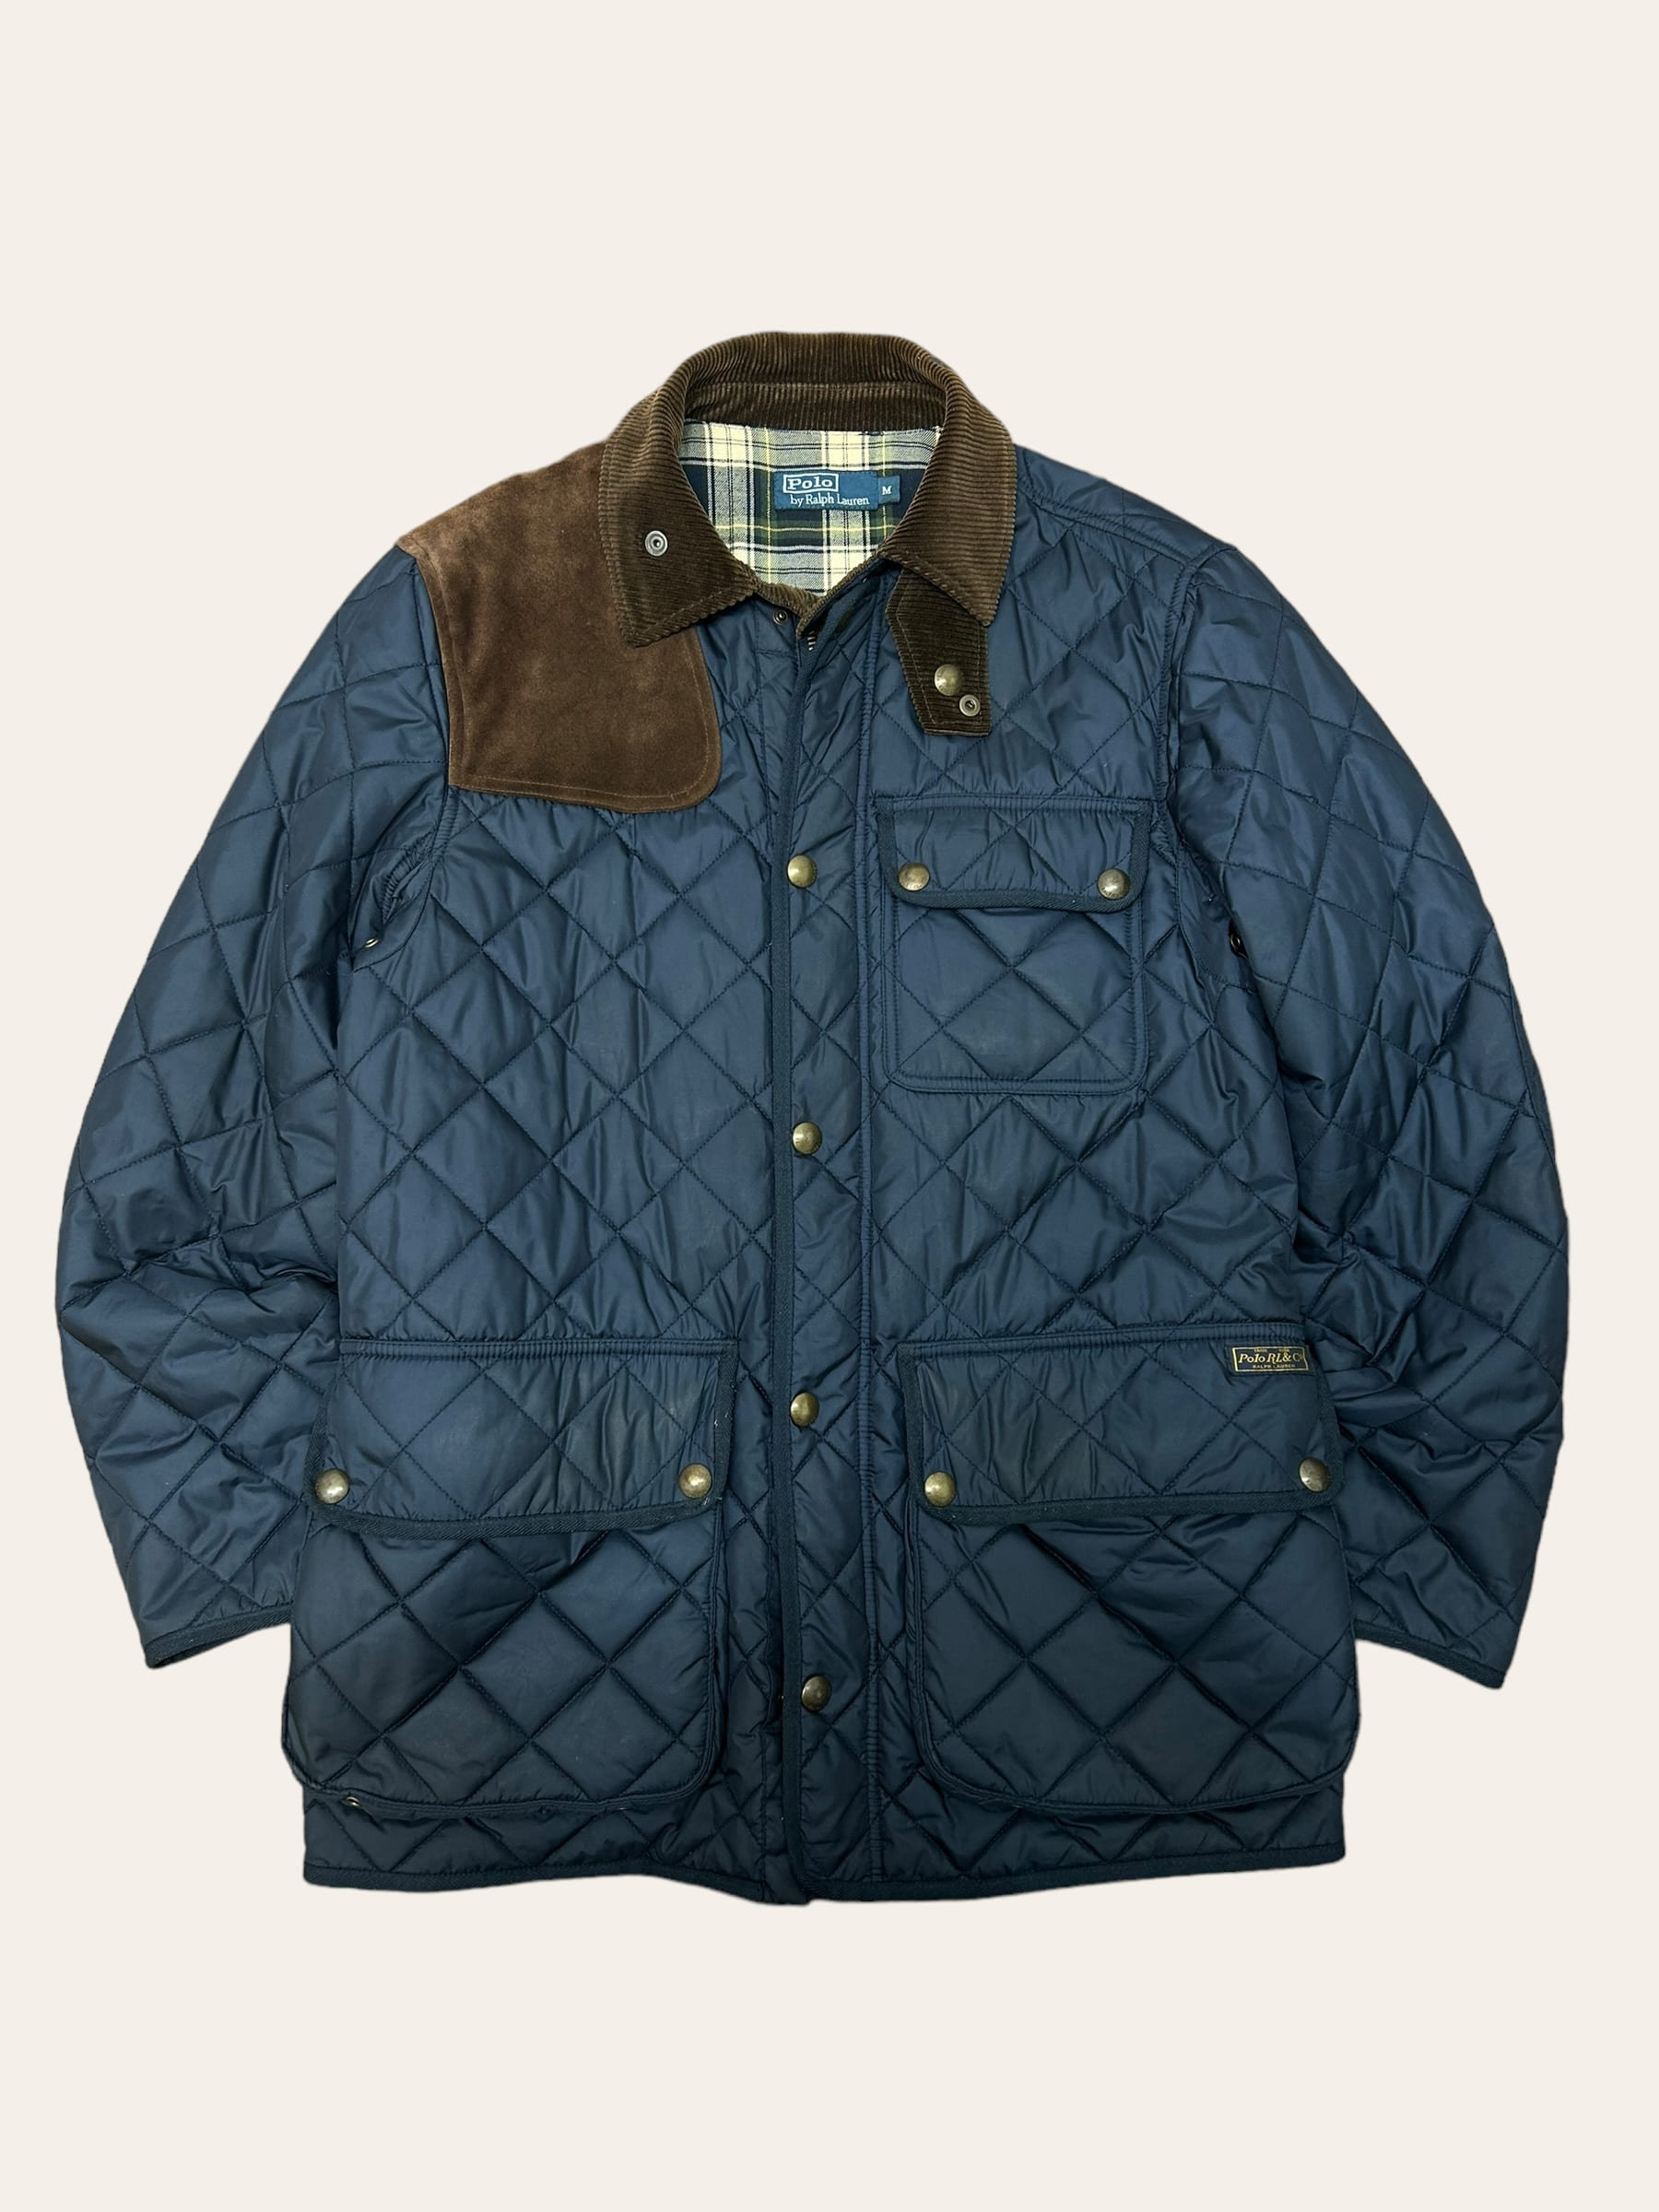 Polo ralph lauren navy kempton quilted jacket M